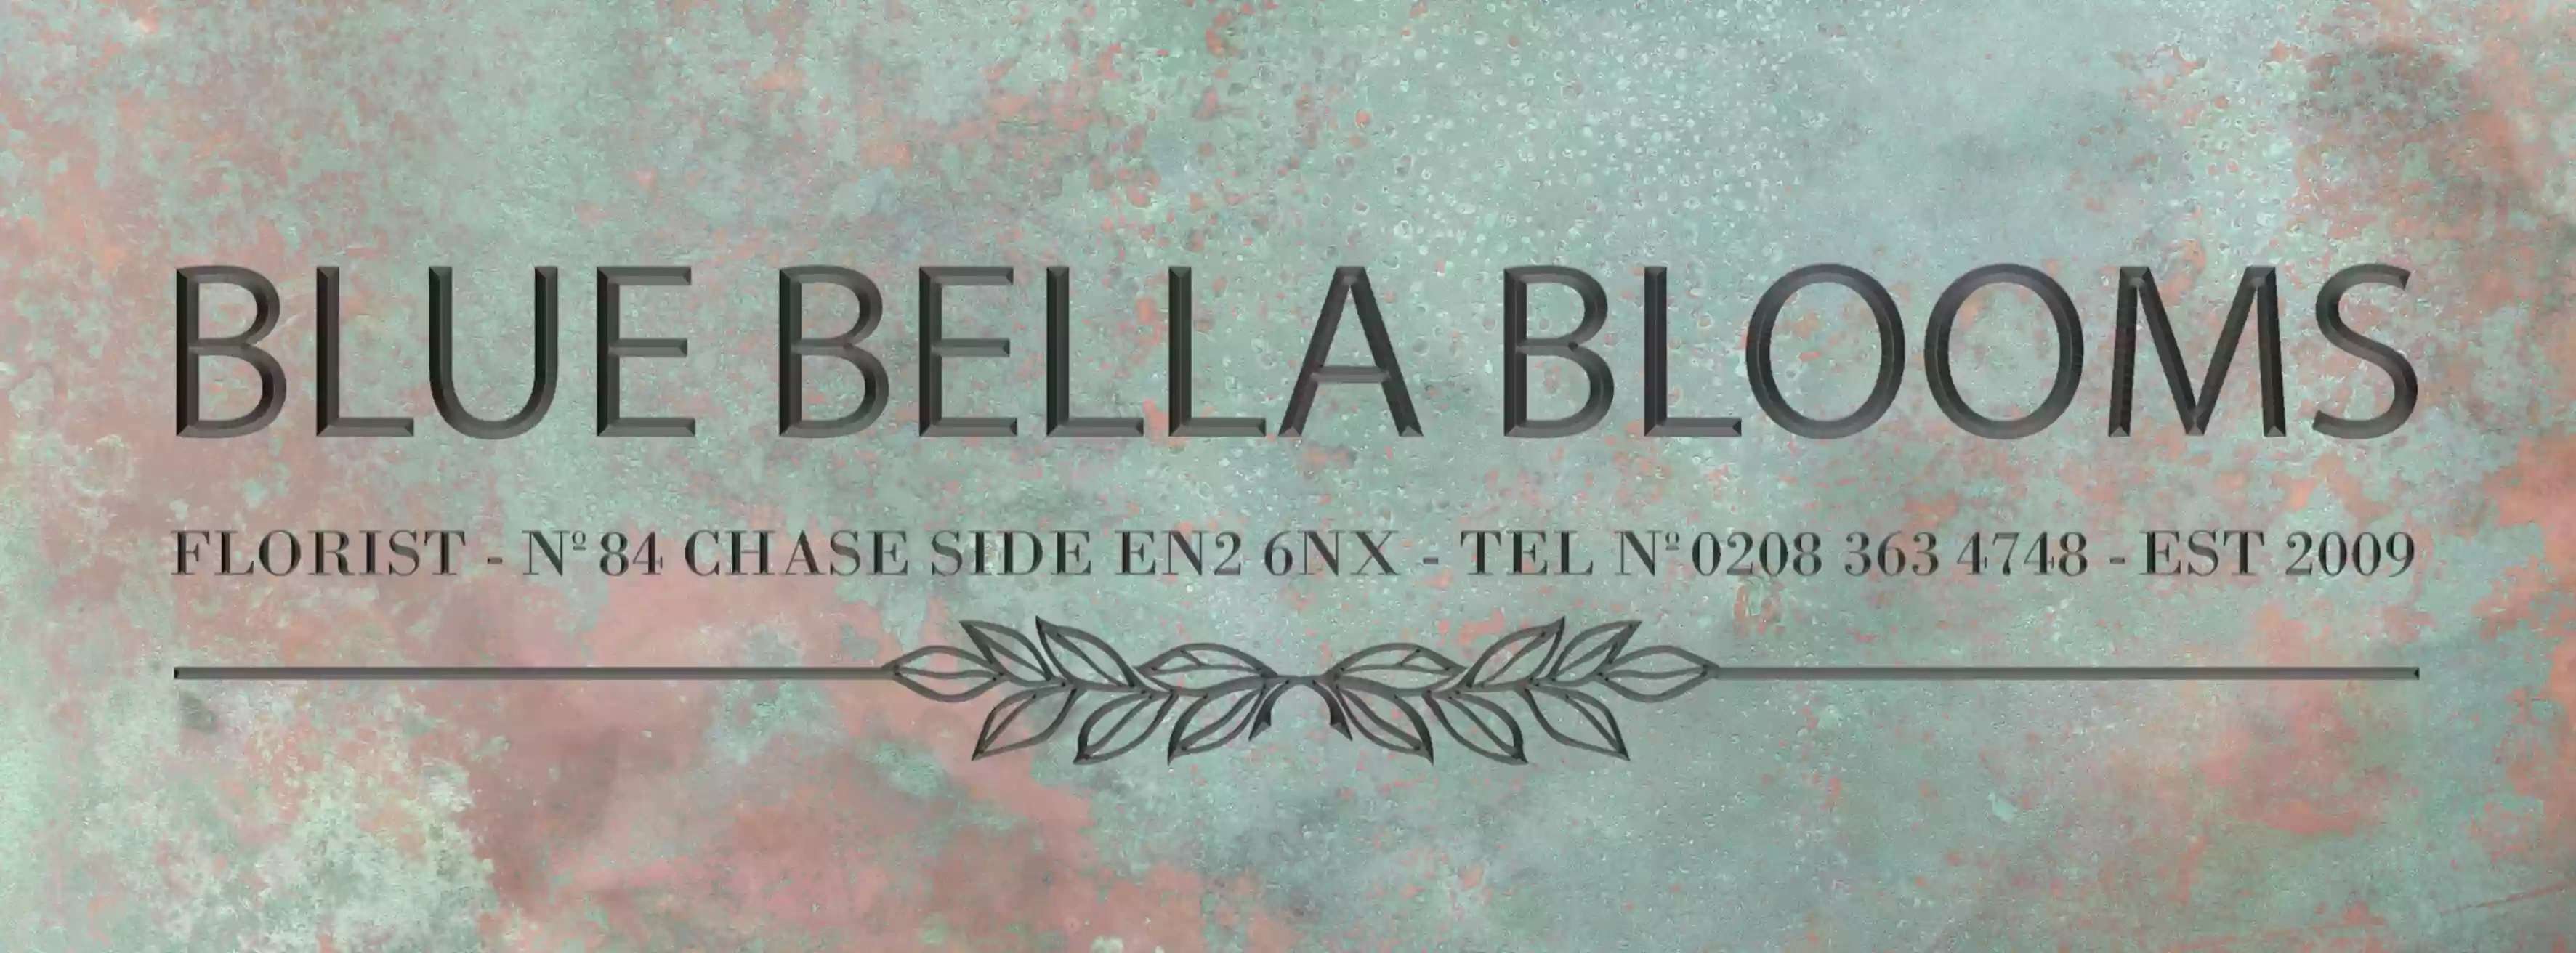 Blue Bella Blooms Ltd